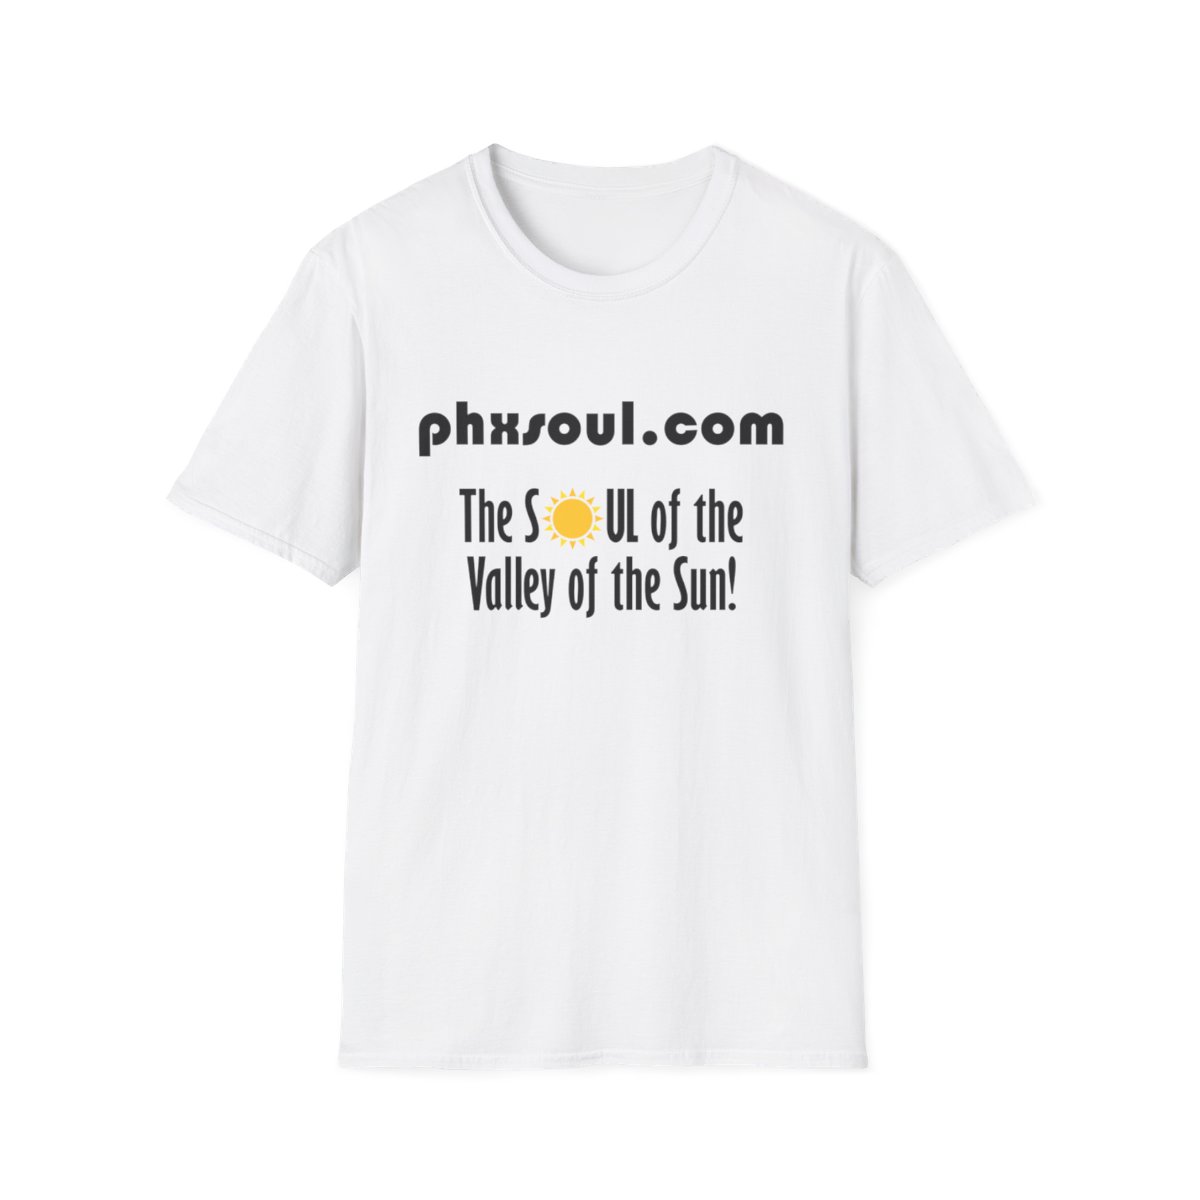 Adult PhxSoul.com Unisex Softstyle White T-Shirt product main image